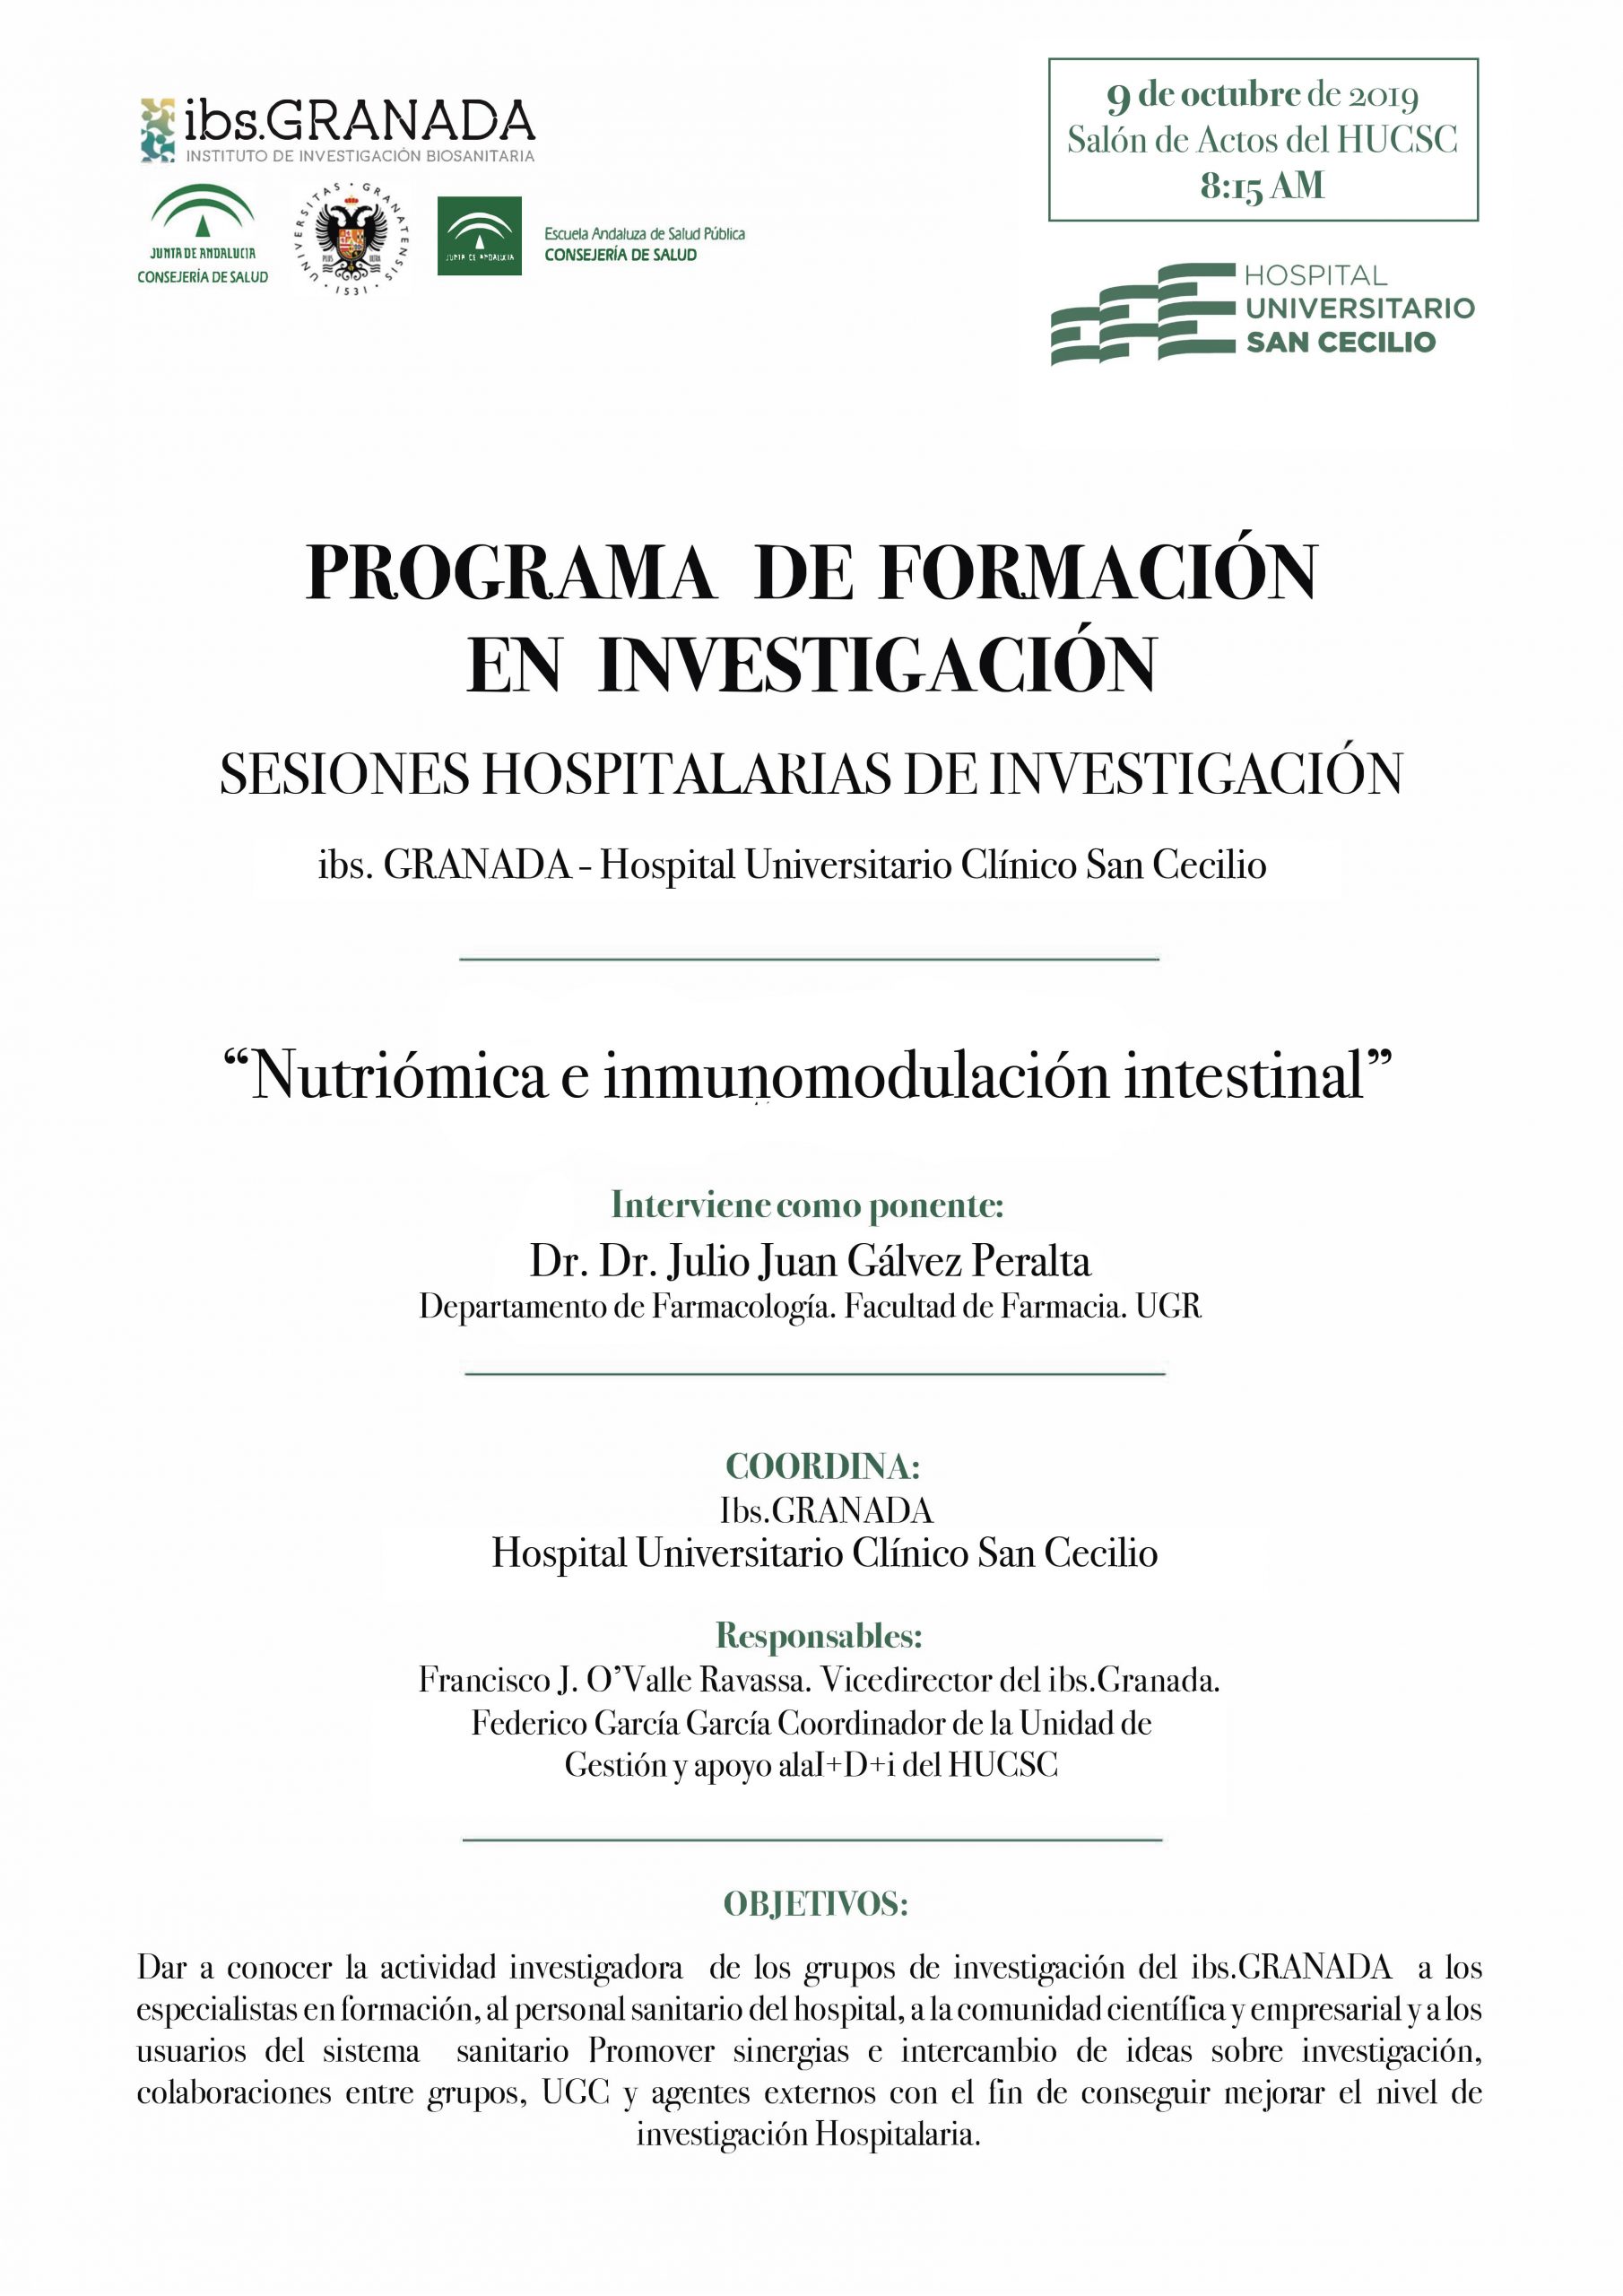 Sesión Hospitalaria: "Nutriómica e inmunomodulación intestinal"